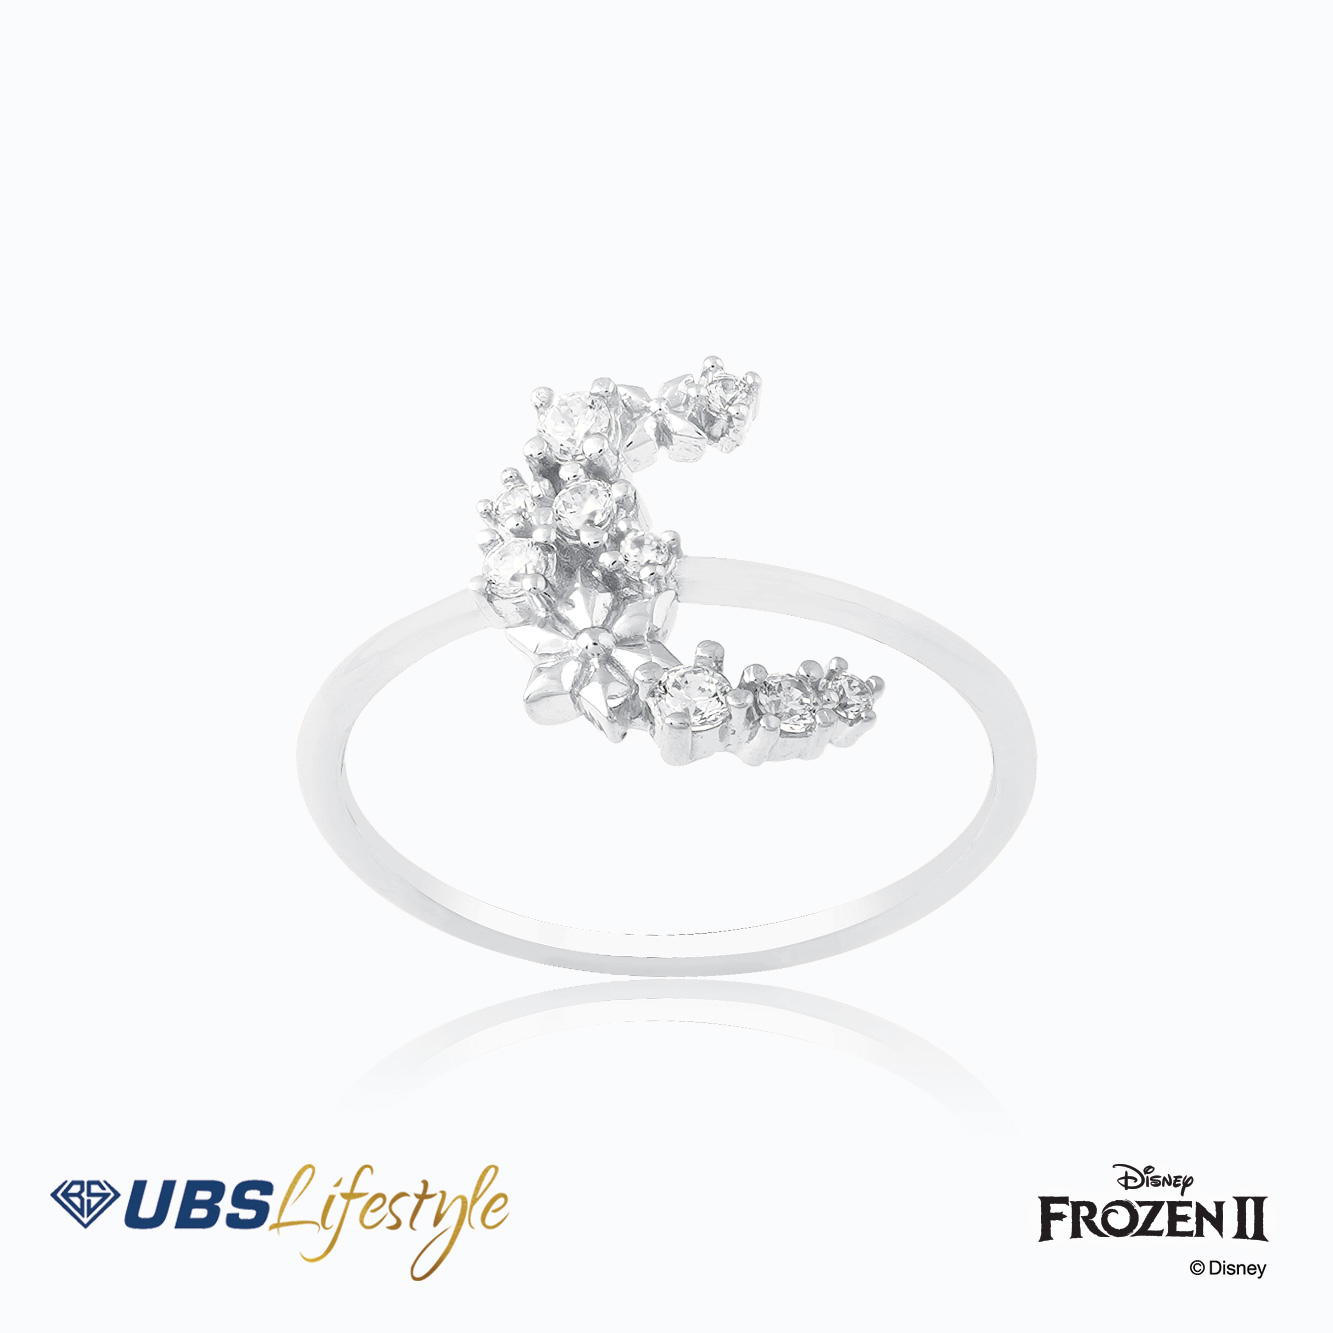 UBS Cincin Emas Disney Frozen - Ccy0159W - 17K